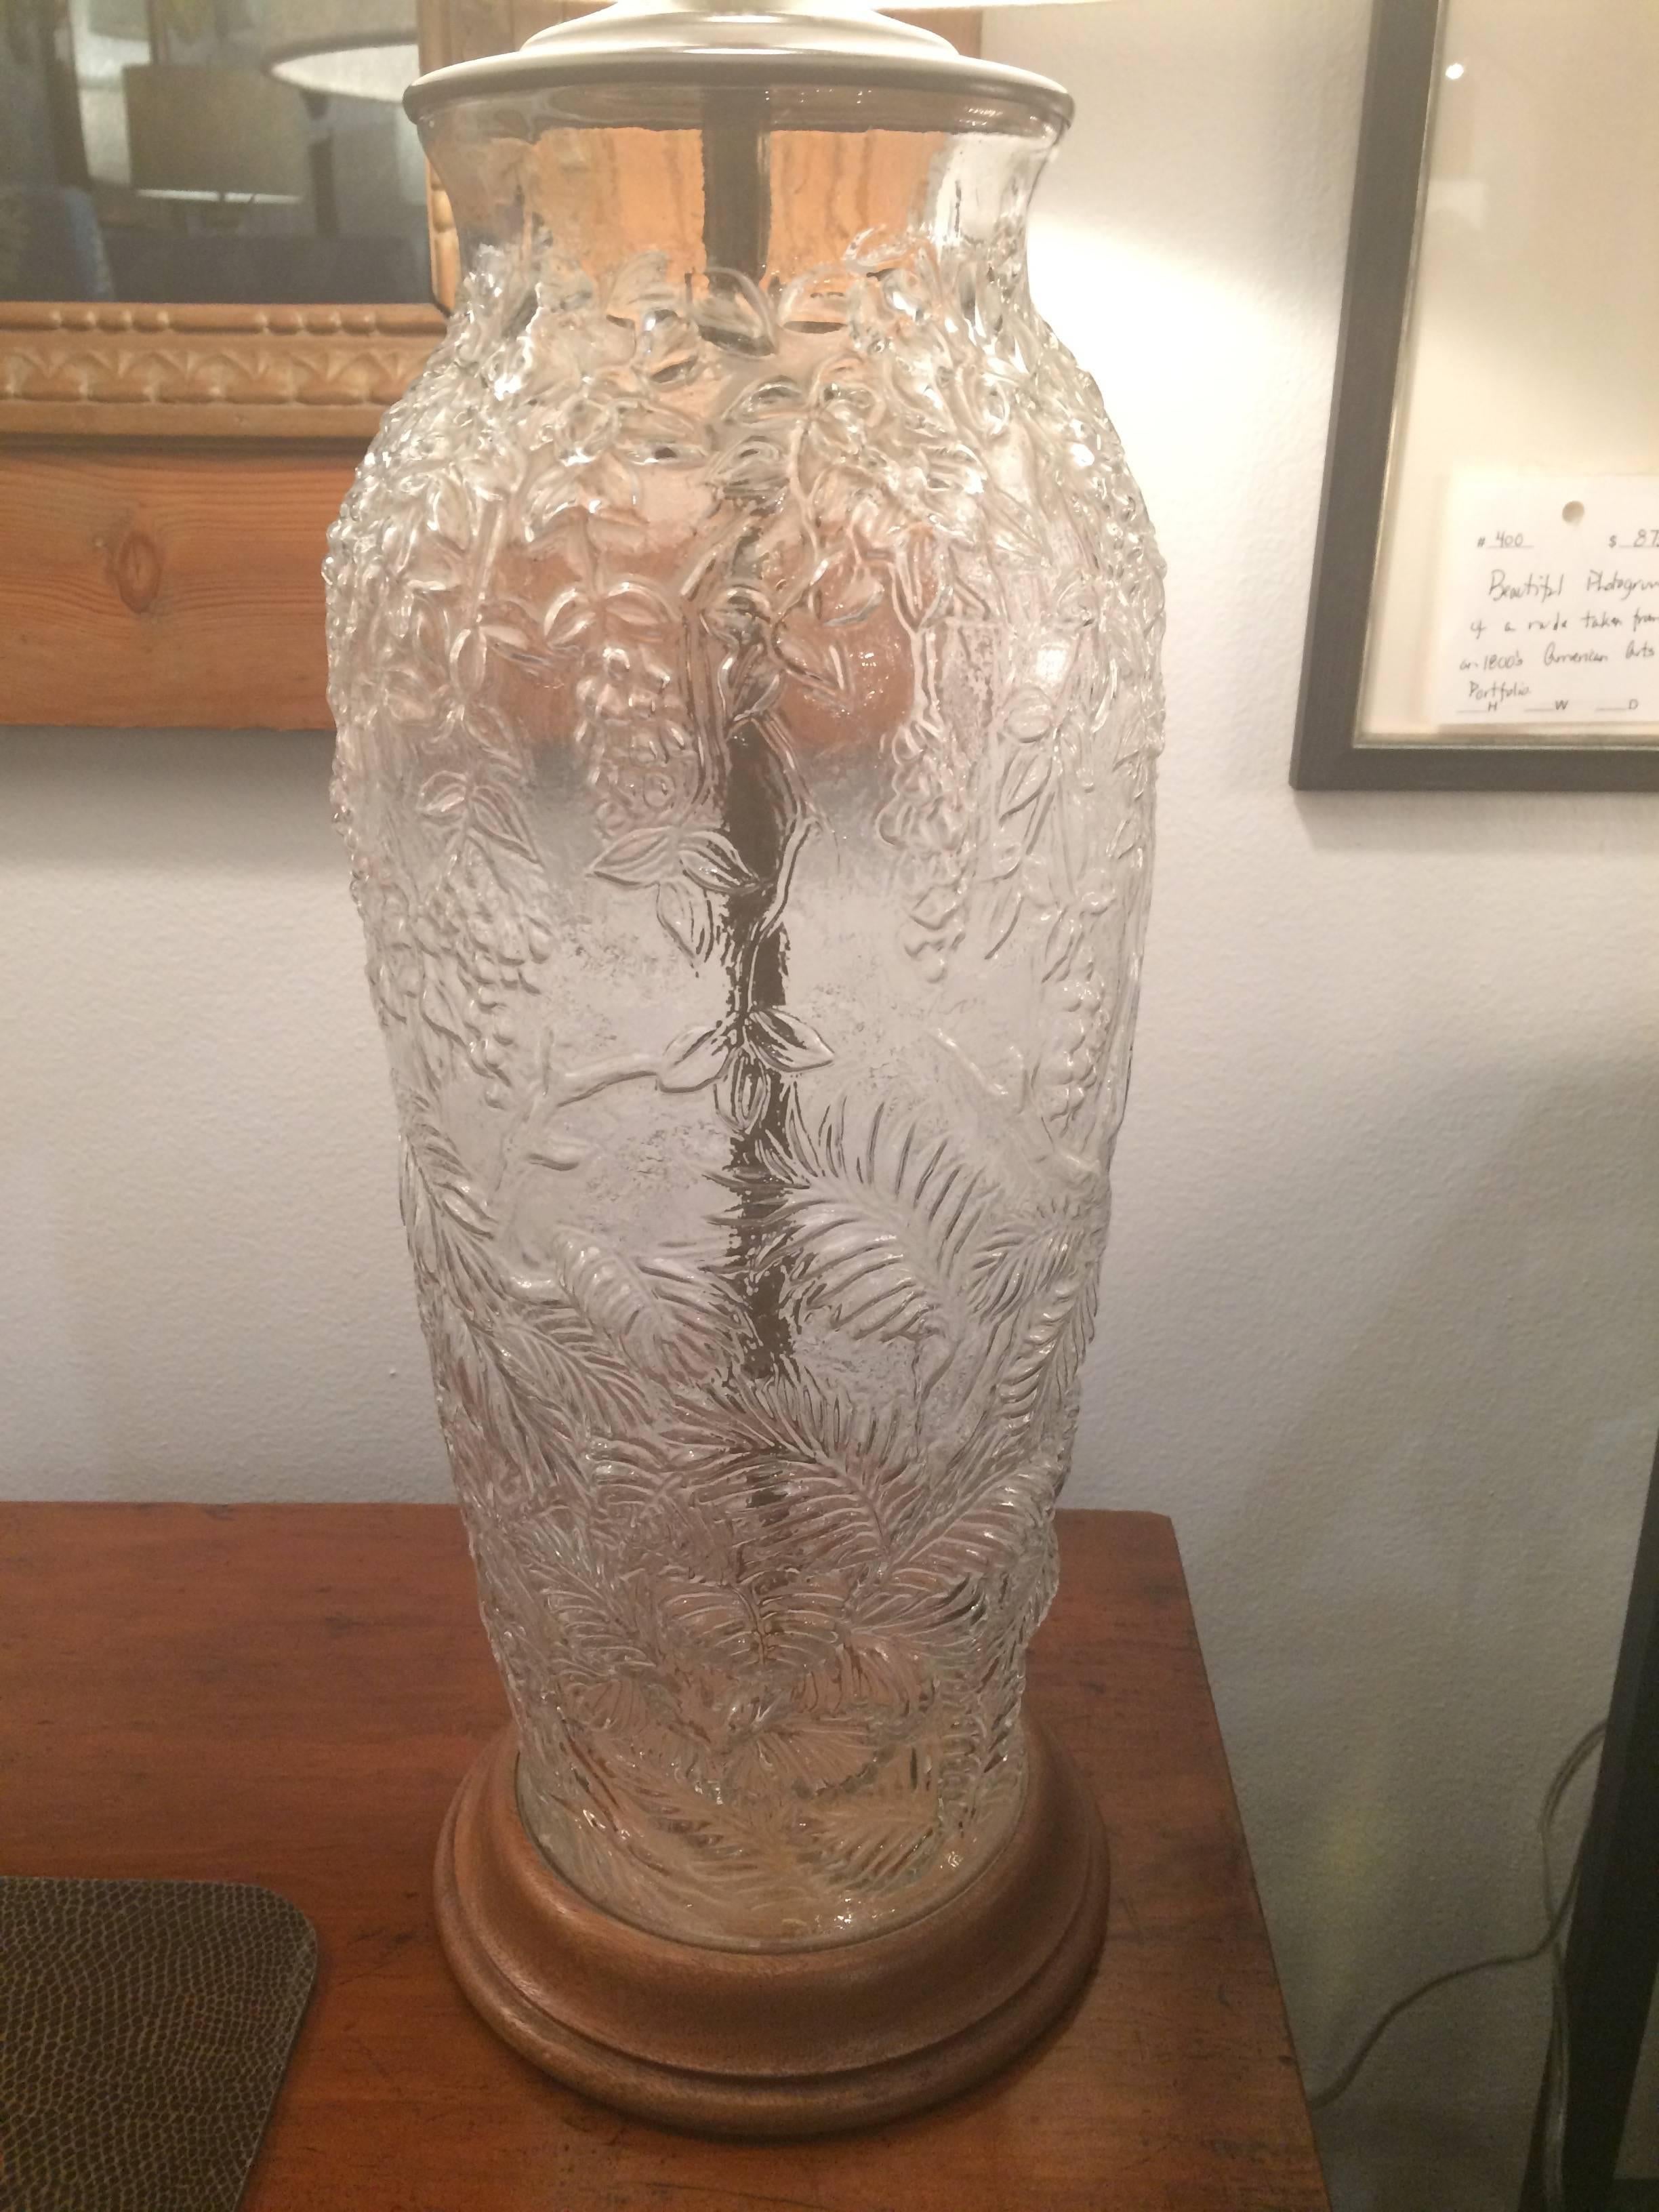 custom glass pickle jar